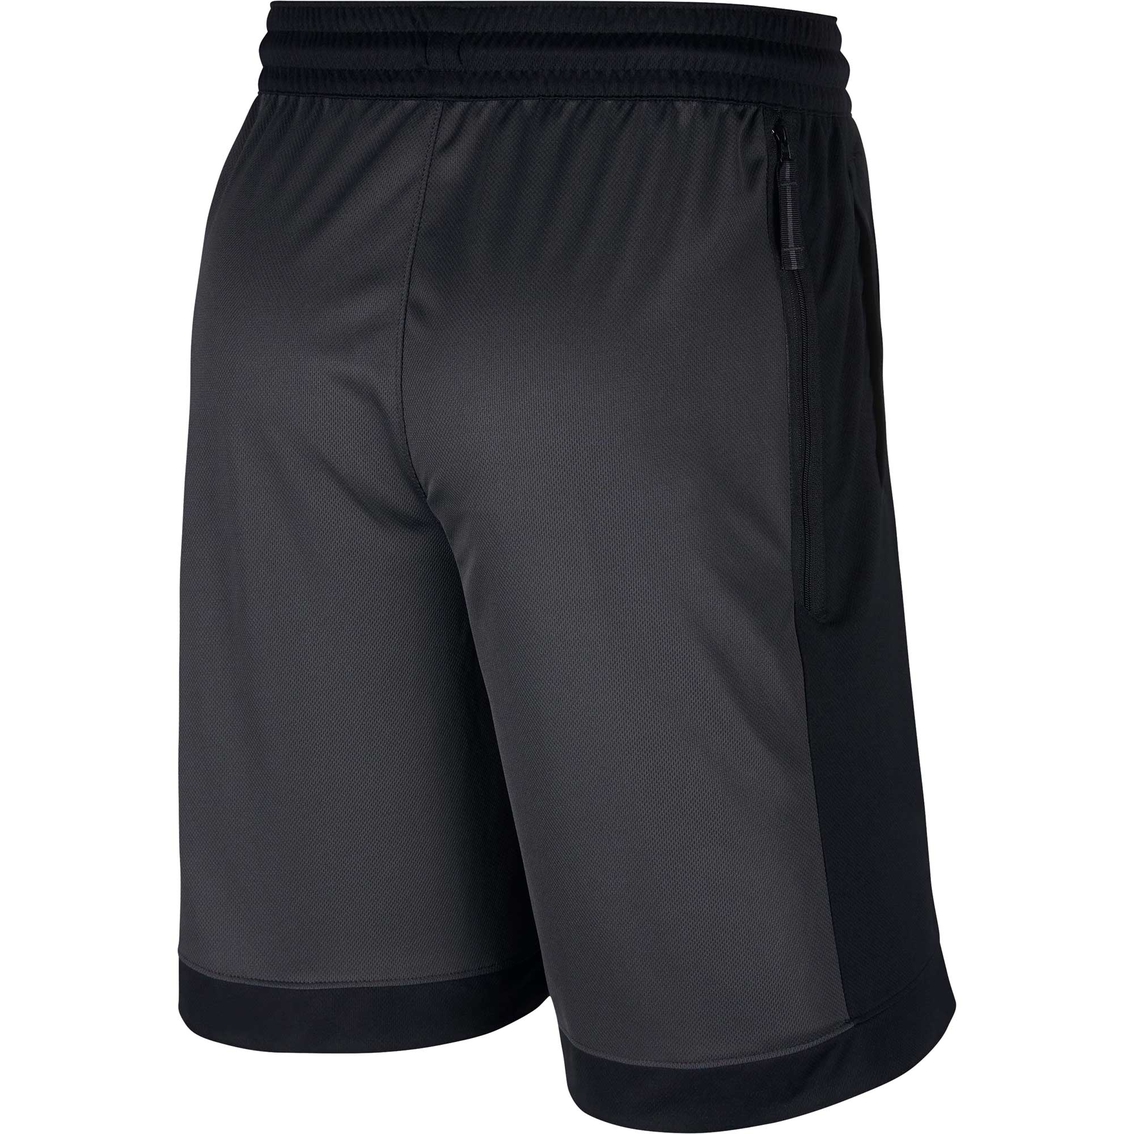 Nike Dry Blocked Asym Basketball Shorts - Image 2 of 5